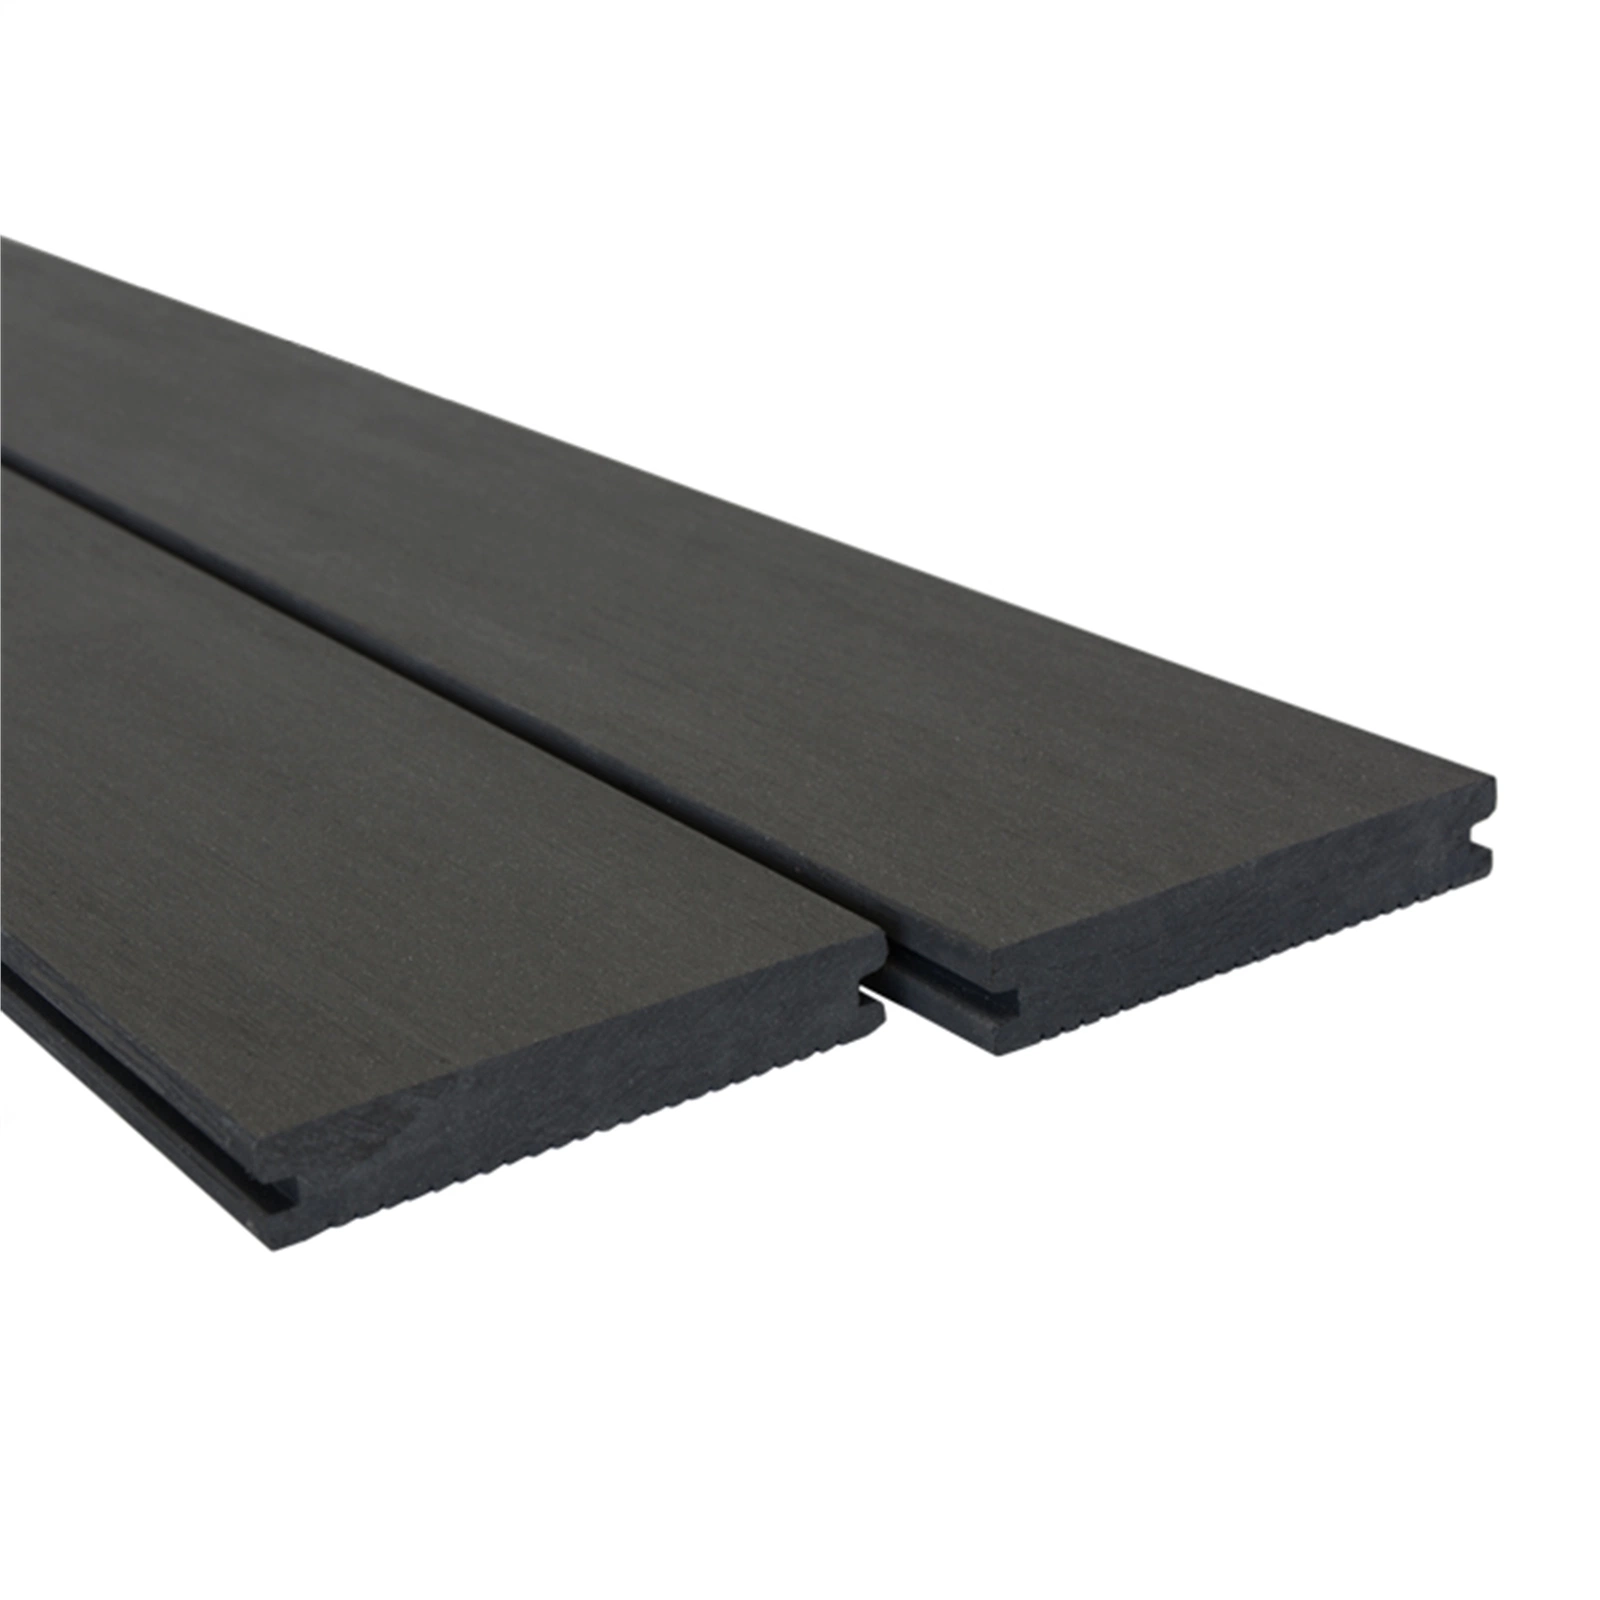 Ocox Waterproof Solid Wood Plastic Composite Flooring Outdoor WPC Decking Flooring